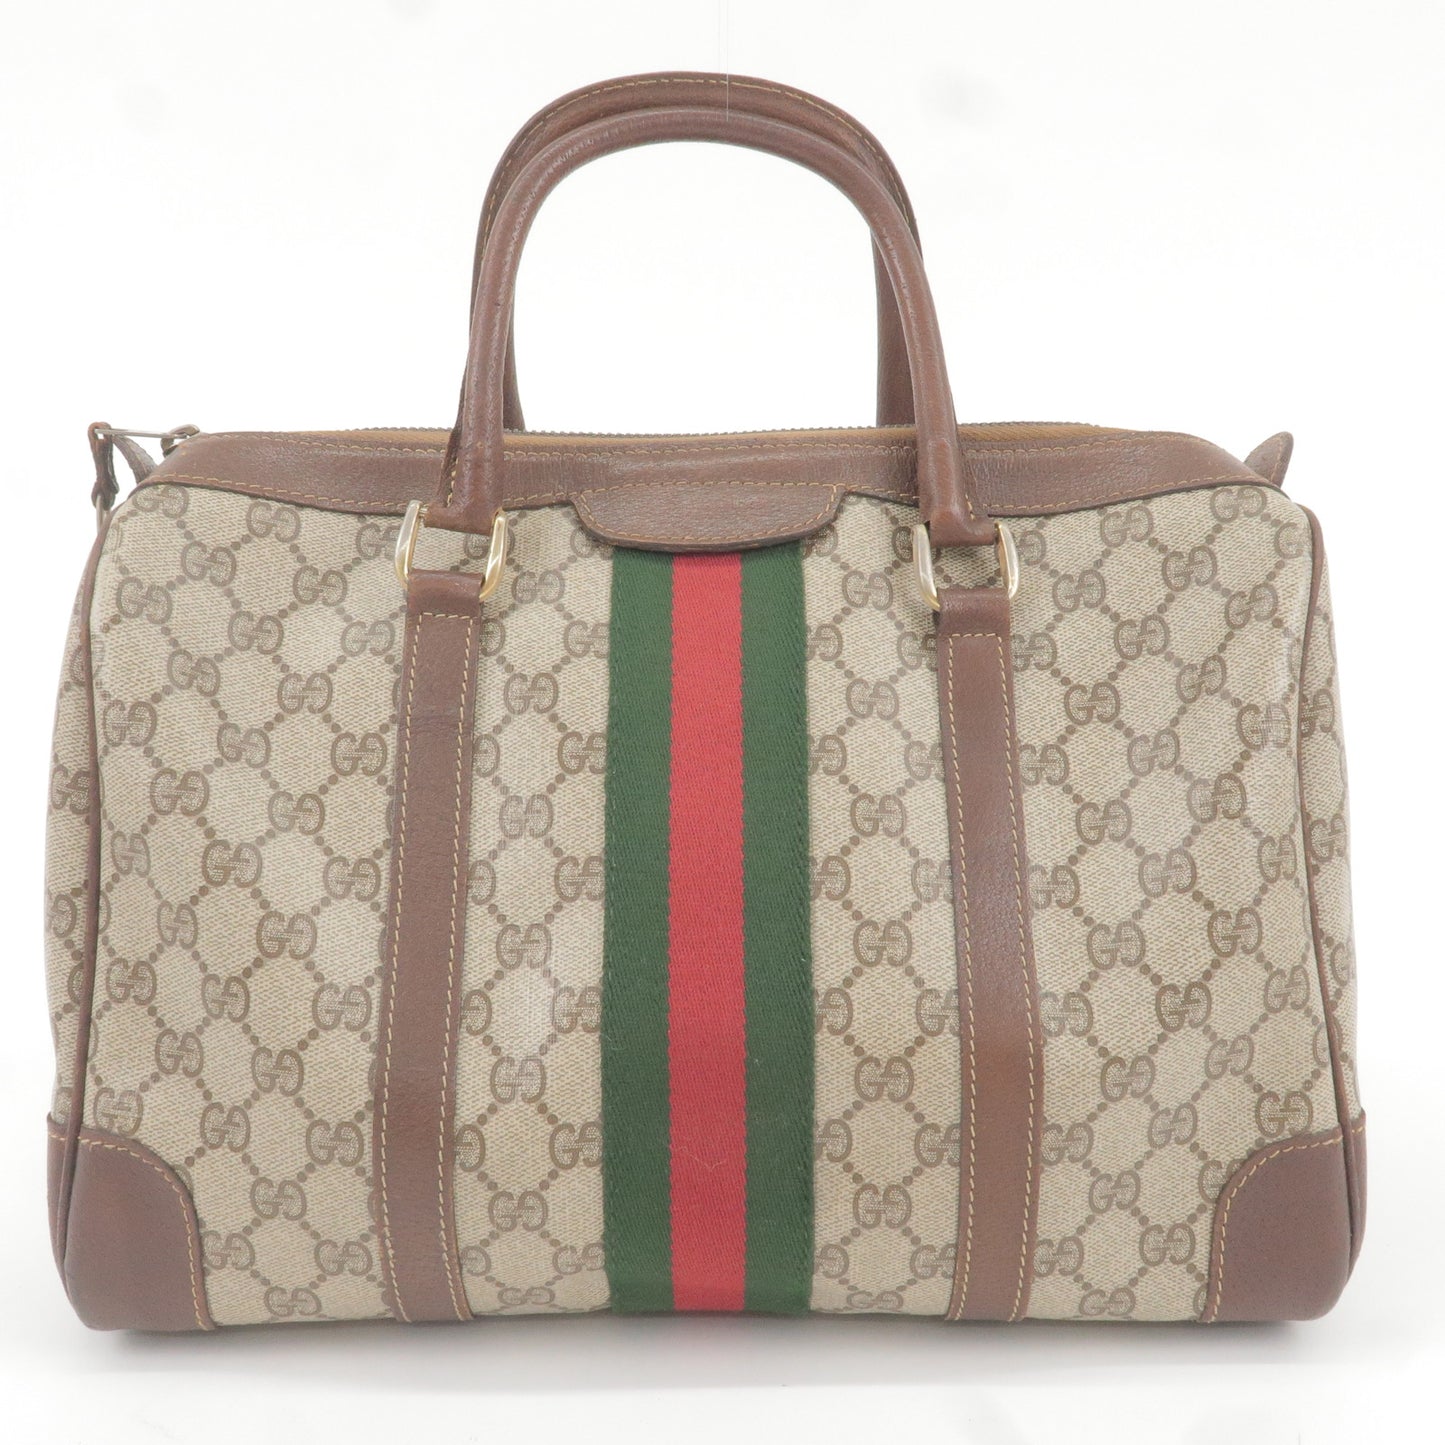 Gucci GG Supreme Saddle Bag - Brown Shoulder Bags, Handbags - GUC1260762